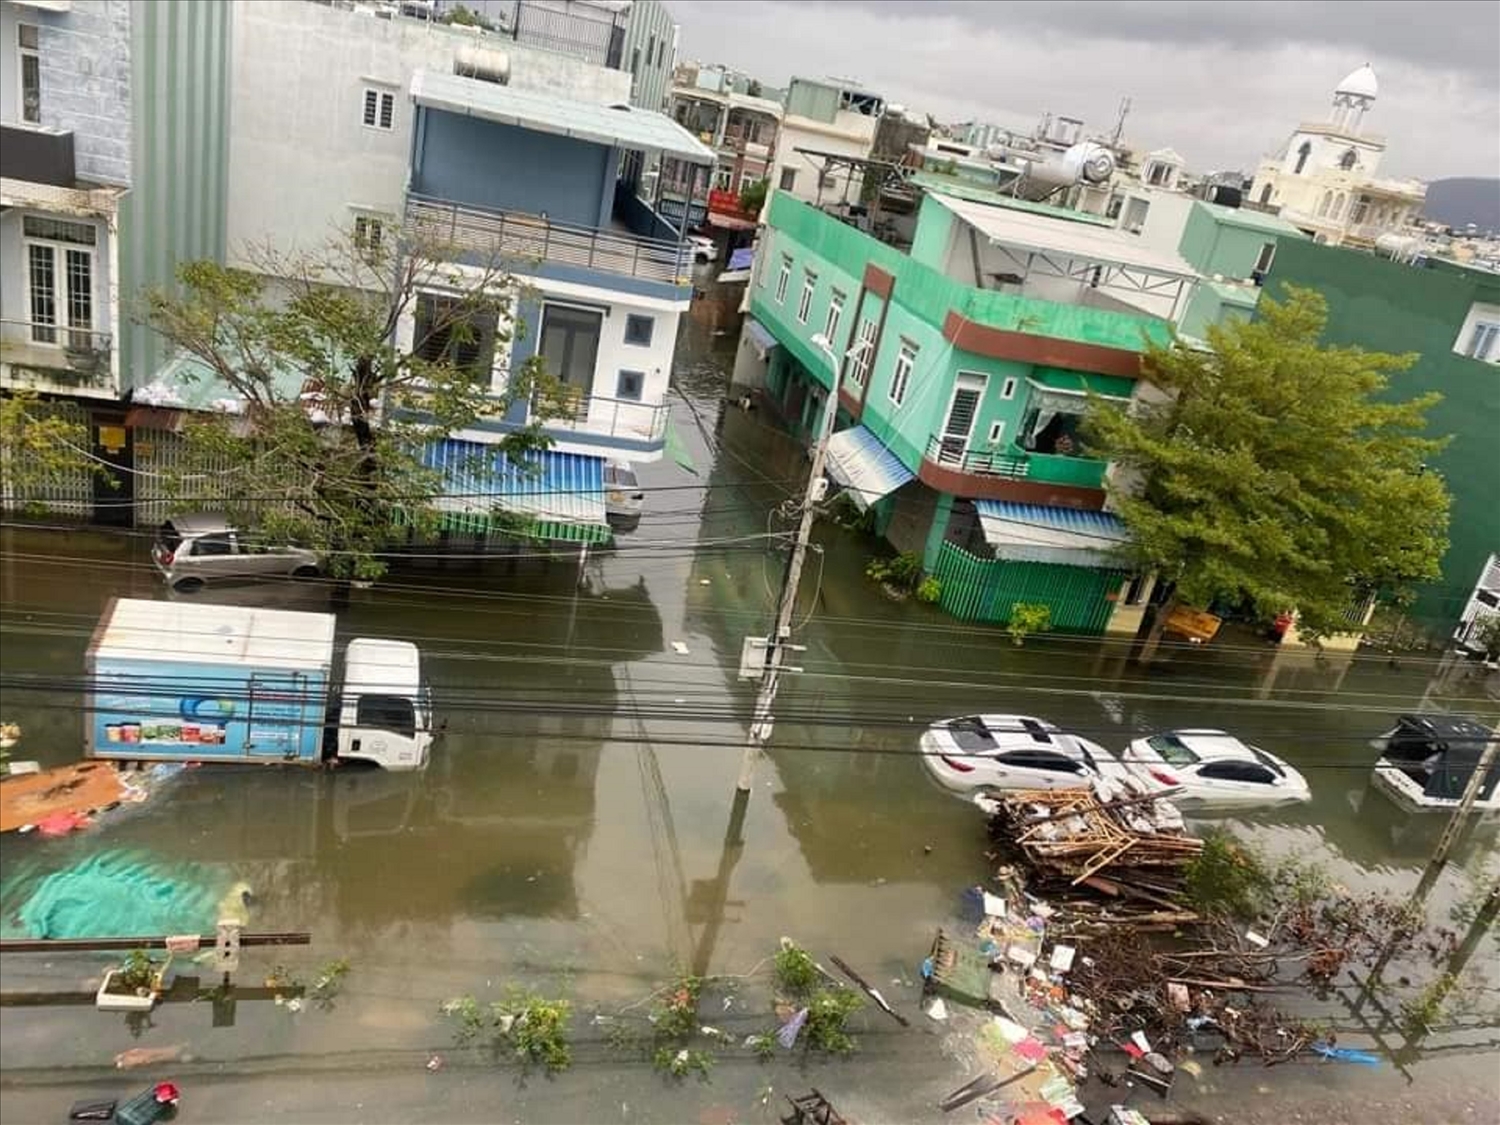 Đà Nẵng thiệt hại nặng nề sau trận lũ lụt lịch sử | Báo Dân tộc và ...